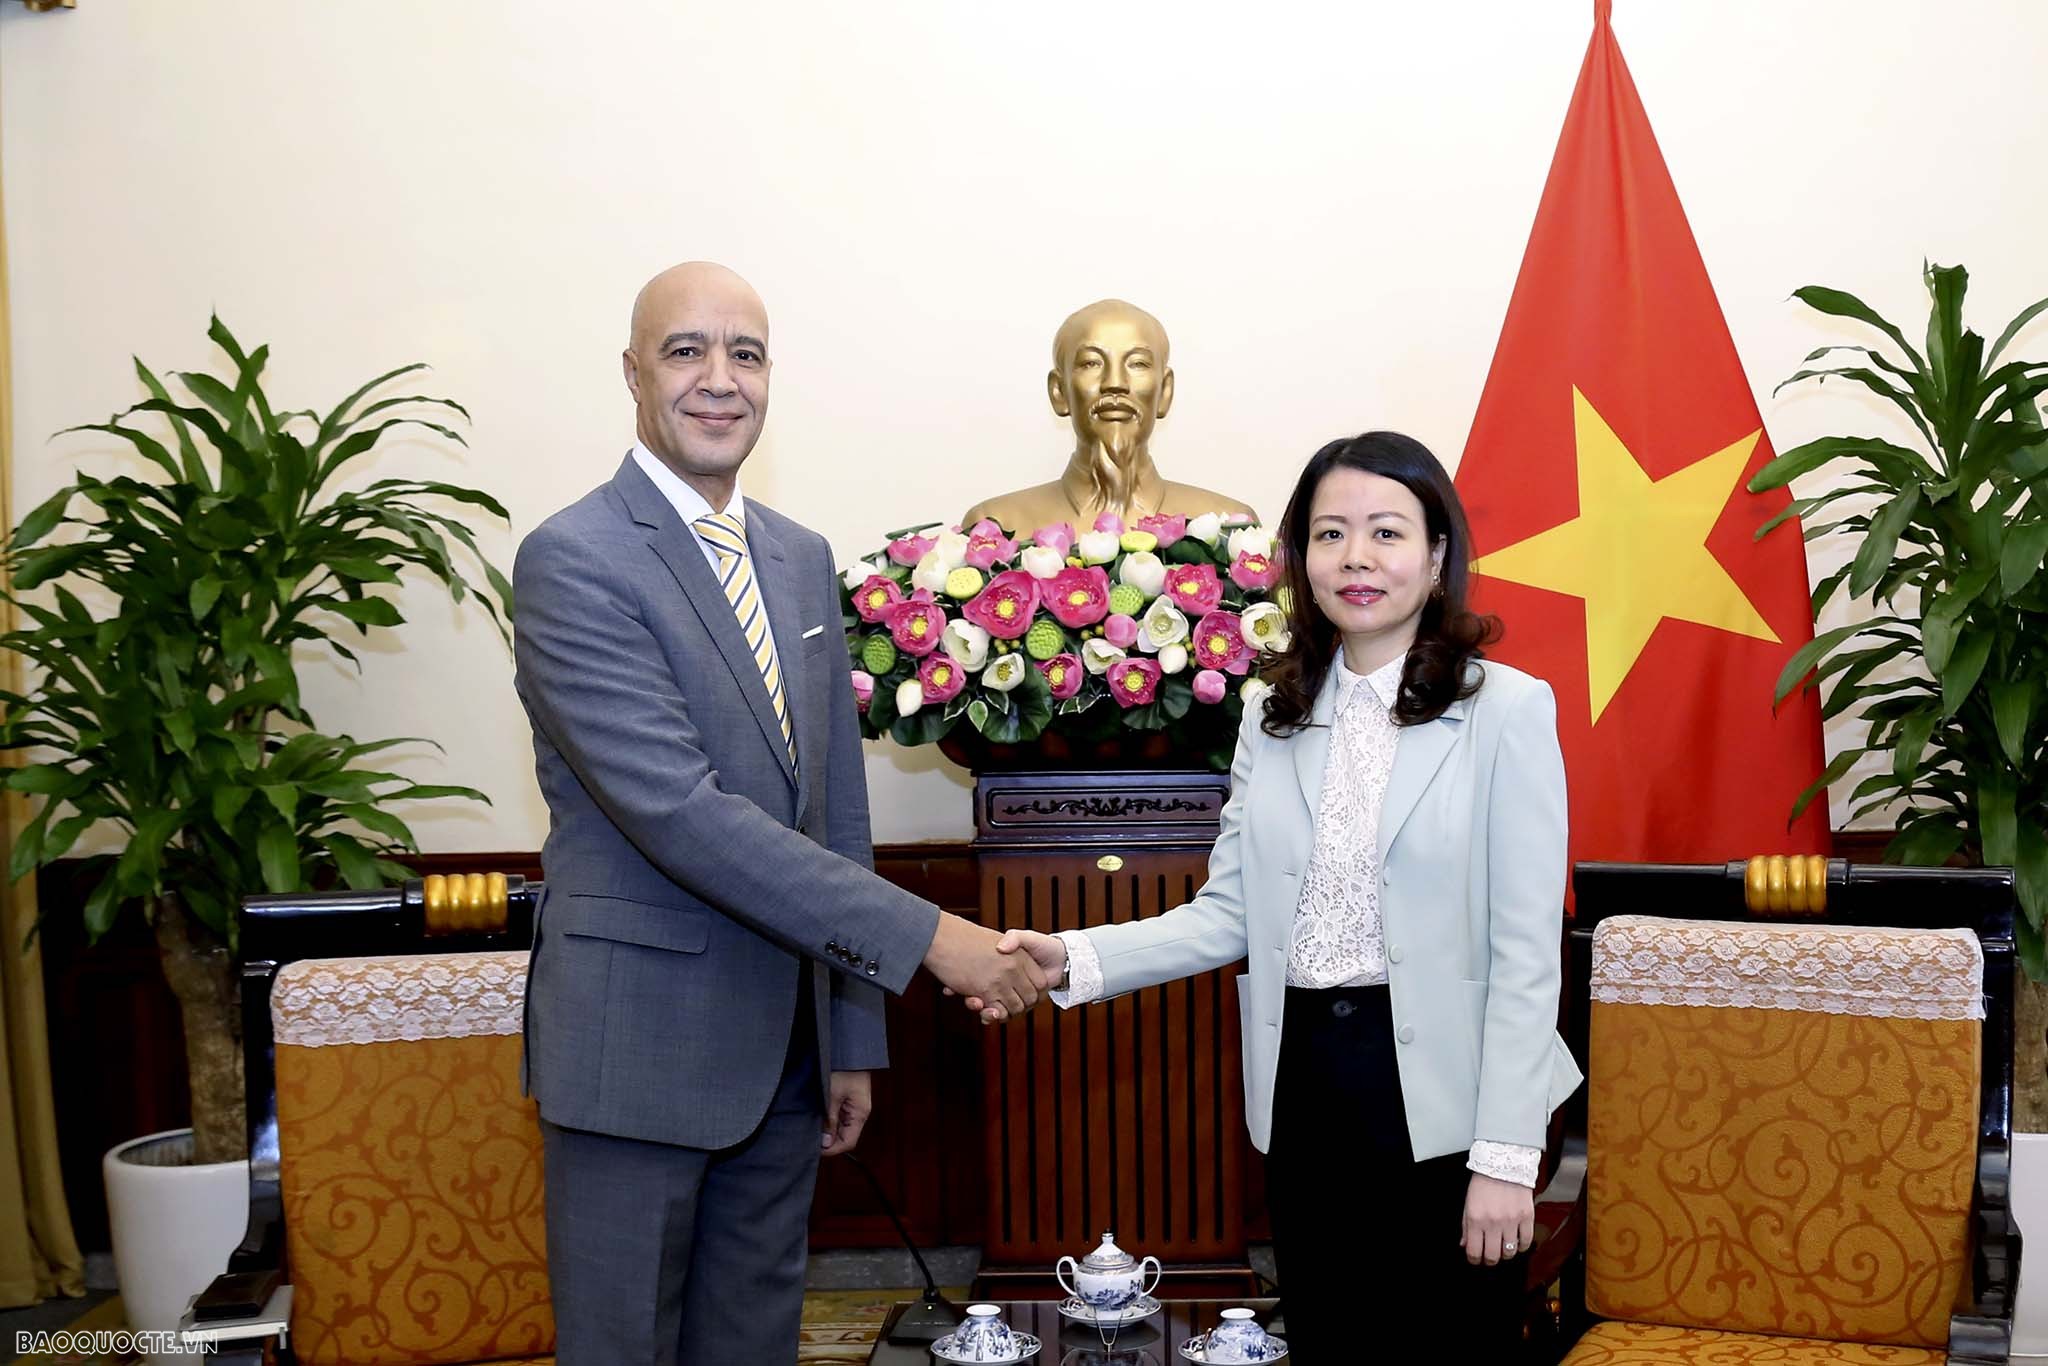 Thứ trưởng Ngoại giao Nguyễn Minh Hằng tiếp nhóm Đại sứ các nước châu Phi tại Hà Nội